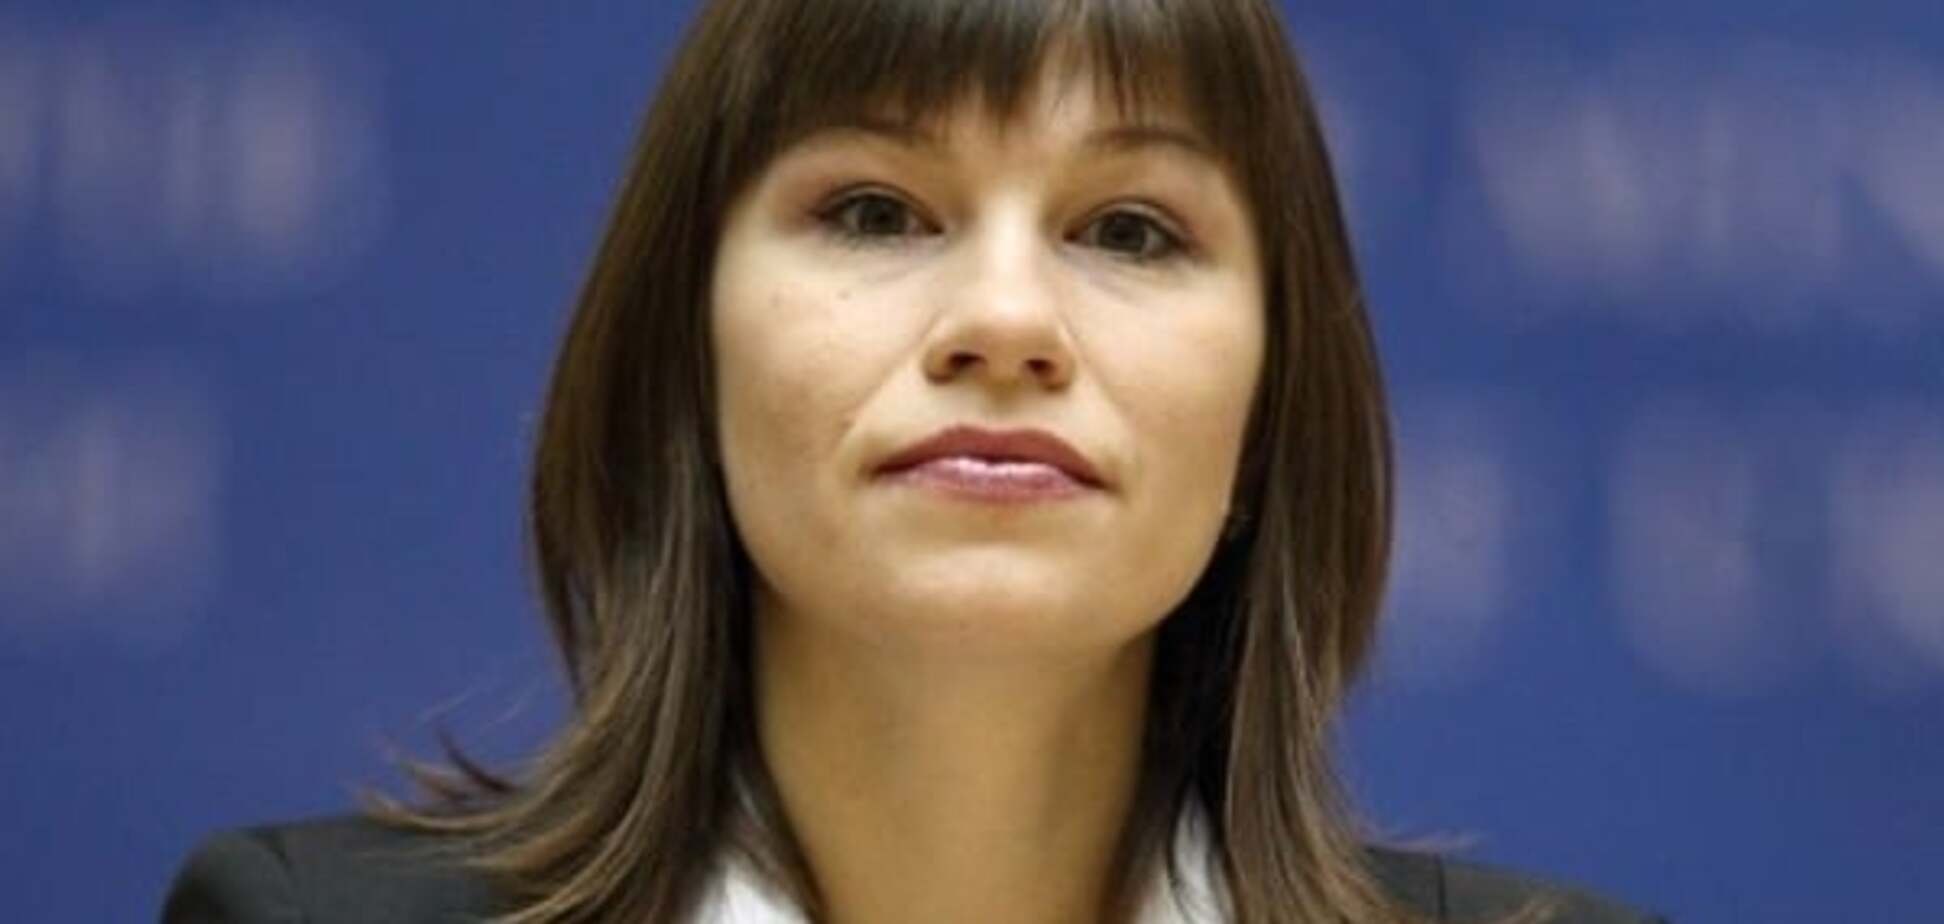 Анна Онищенко